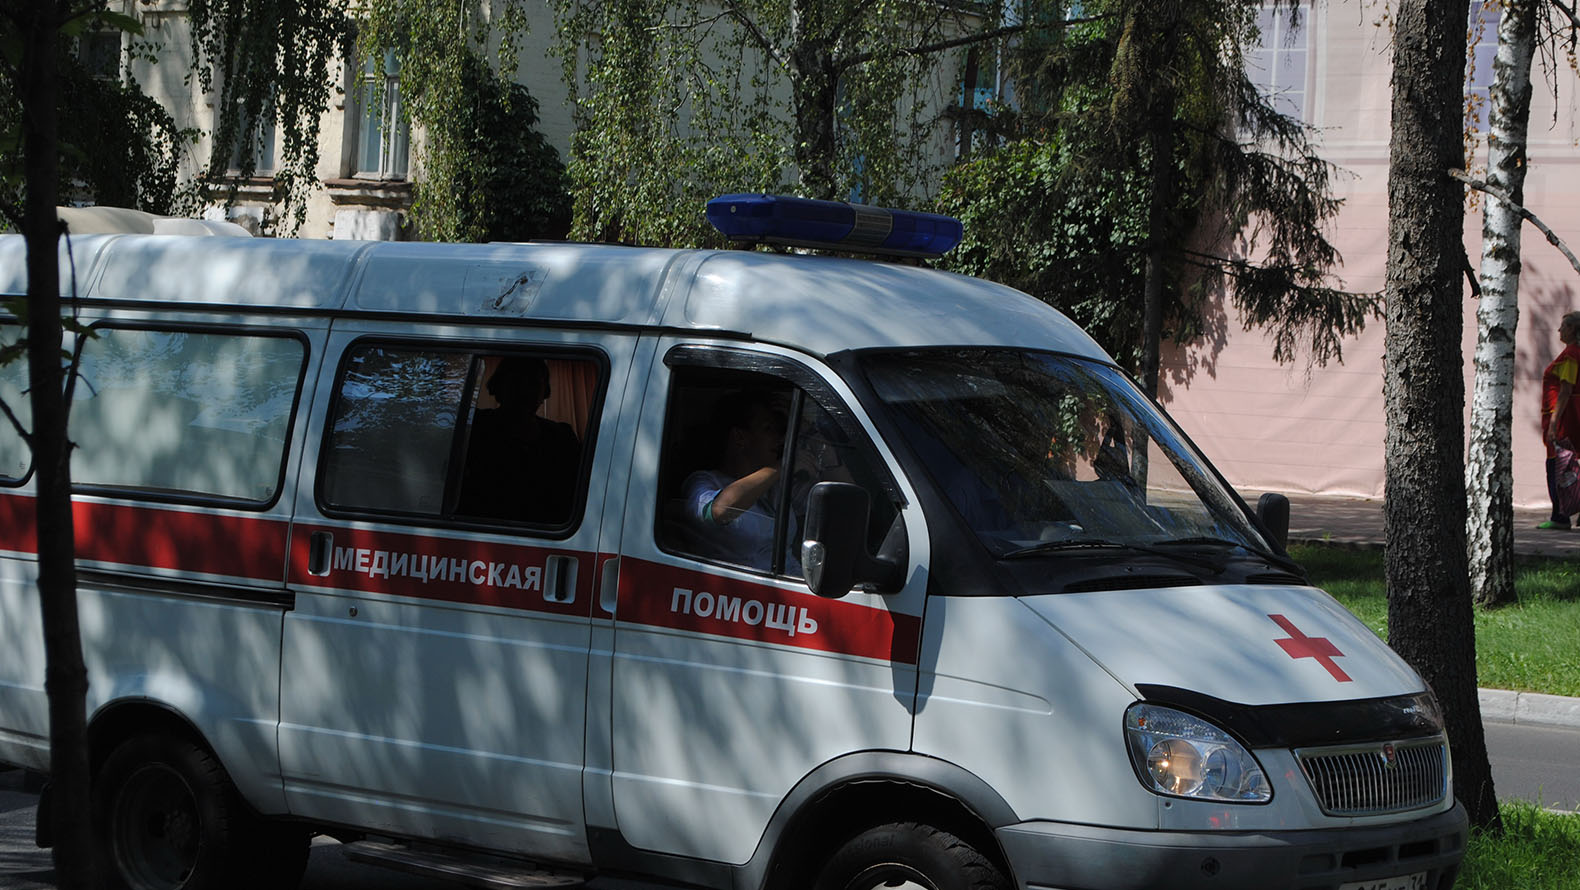 
                     Двое маленьких детей пострадали на дорогах Старого Оскола в Белгородской области 
                